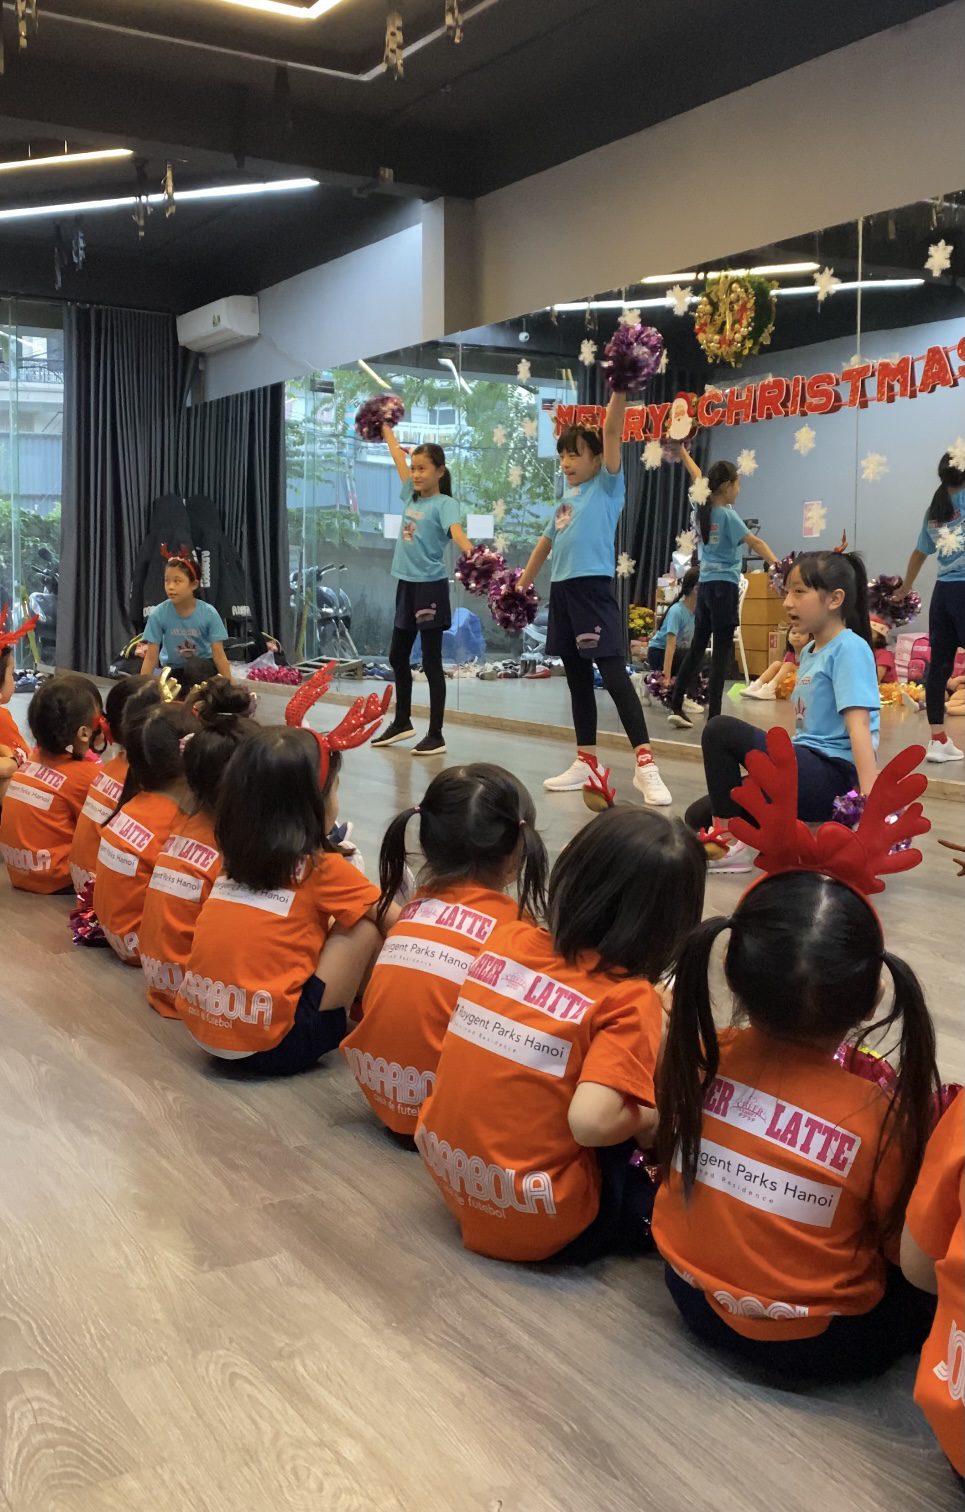 Cheer dance school – Buổi trình diễn Giáng sinh SSA !!!